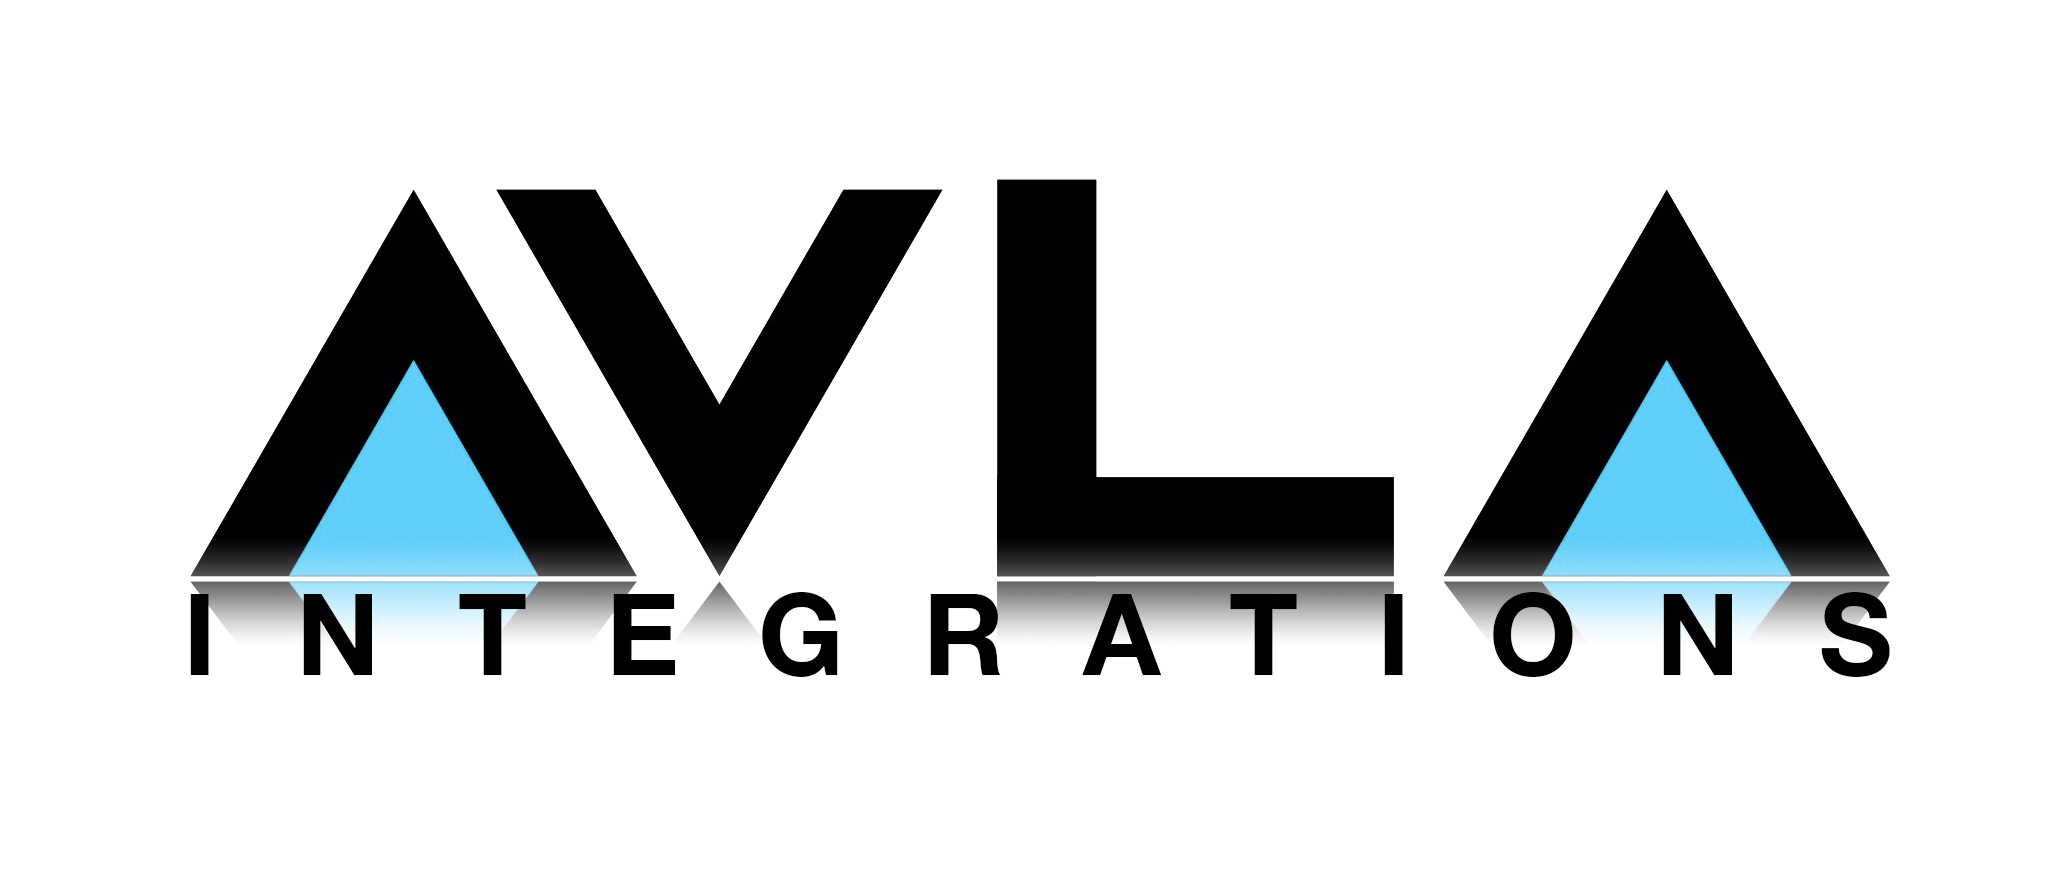 AVLA Logo